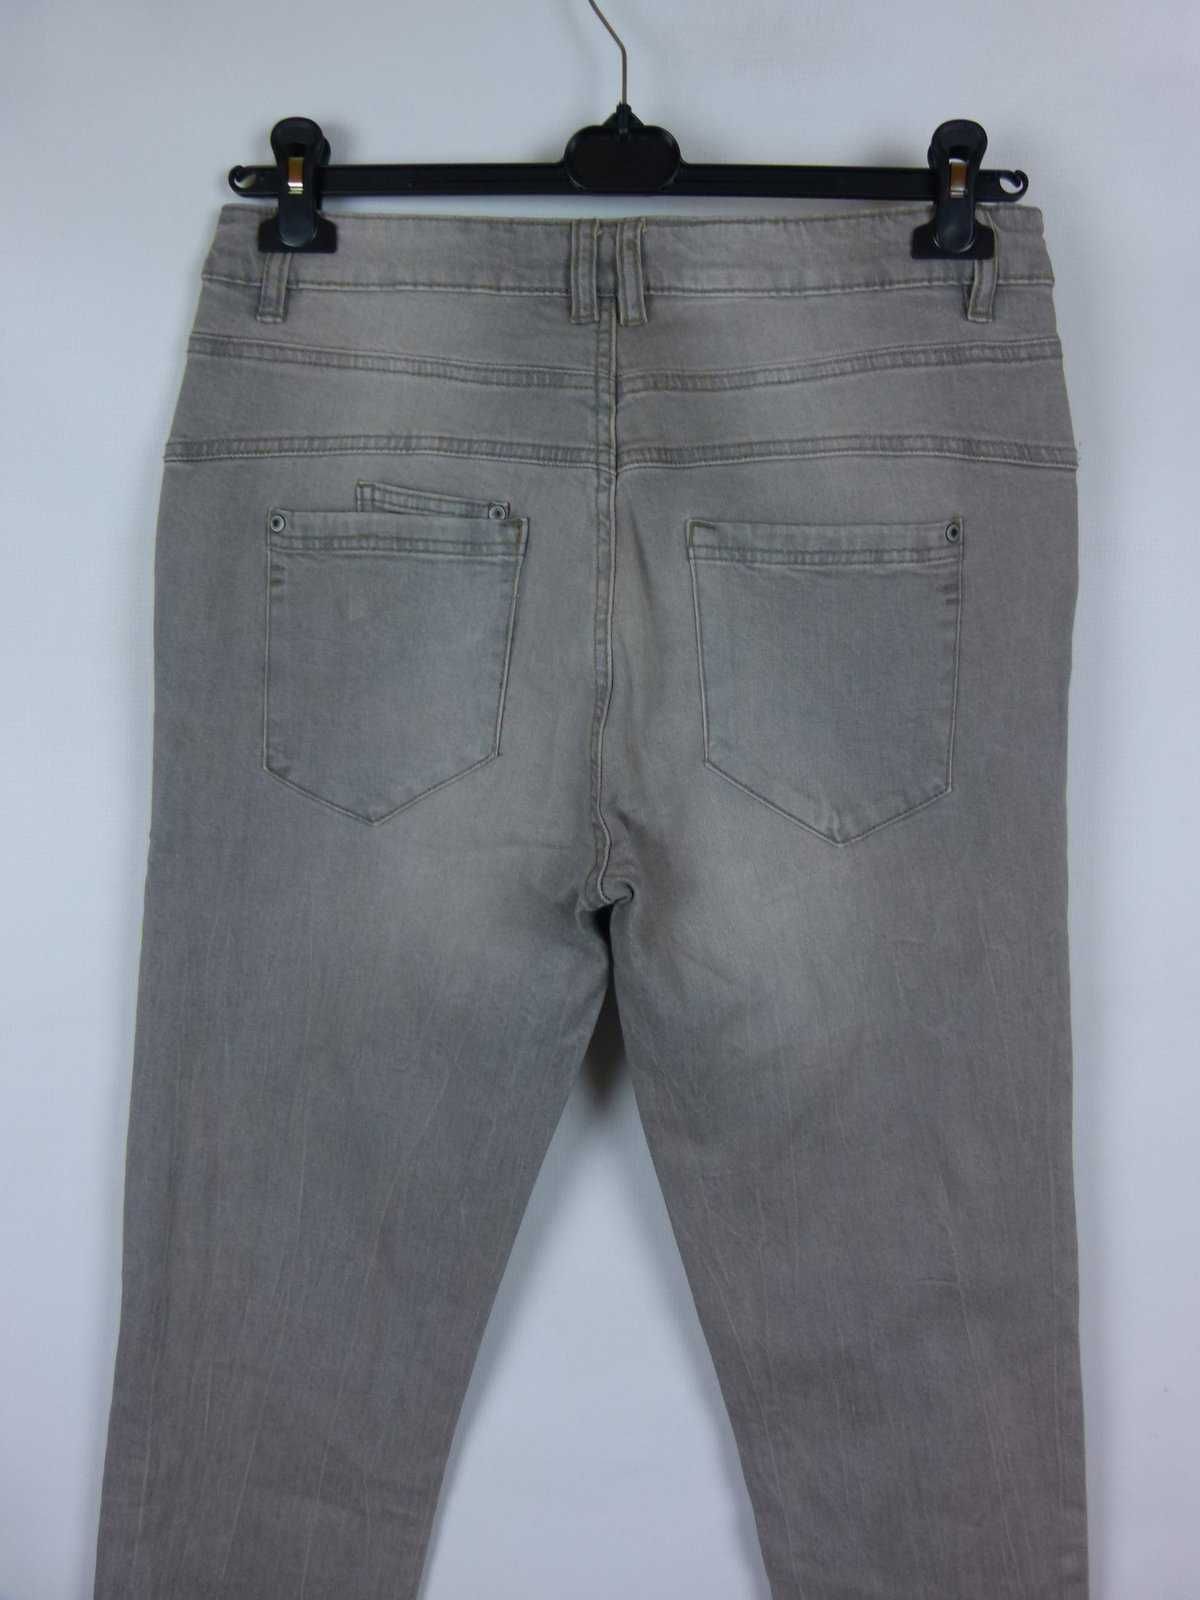 Bottom szare spodnie dżins straight 16 / 42